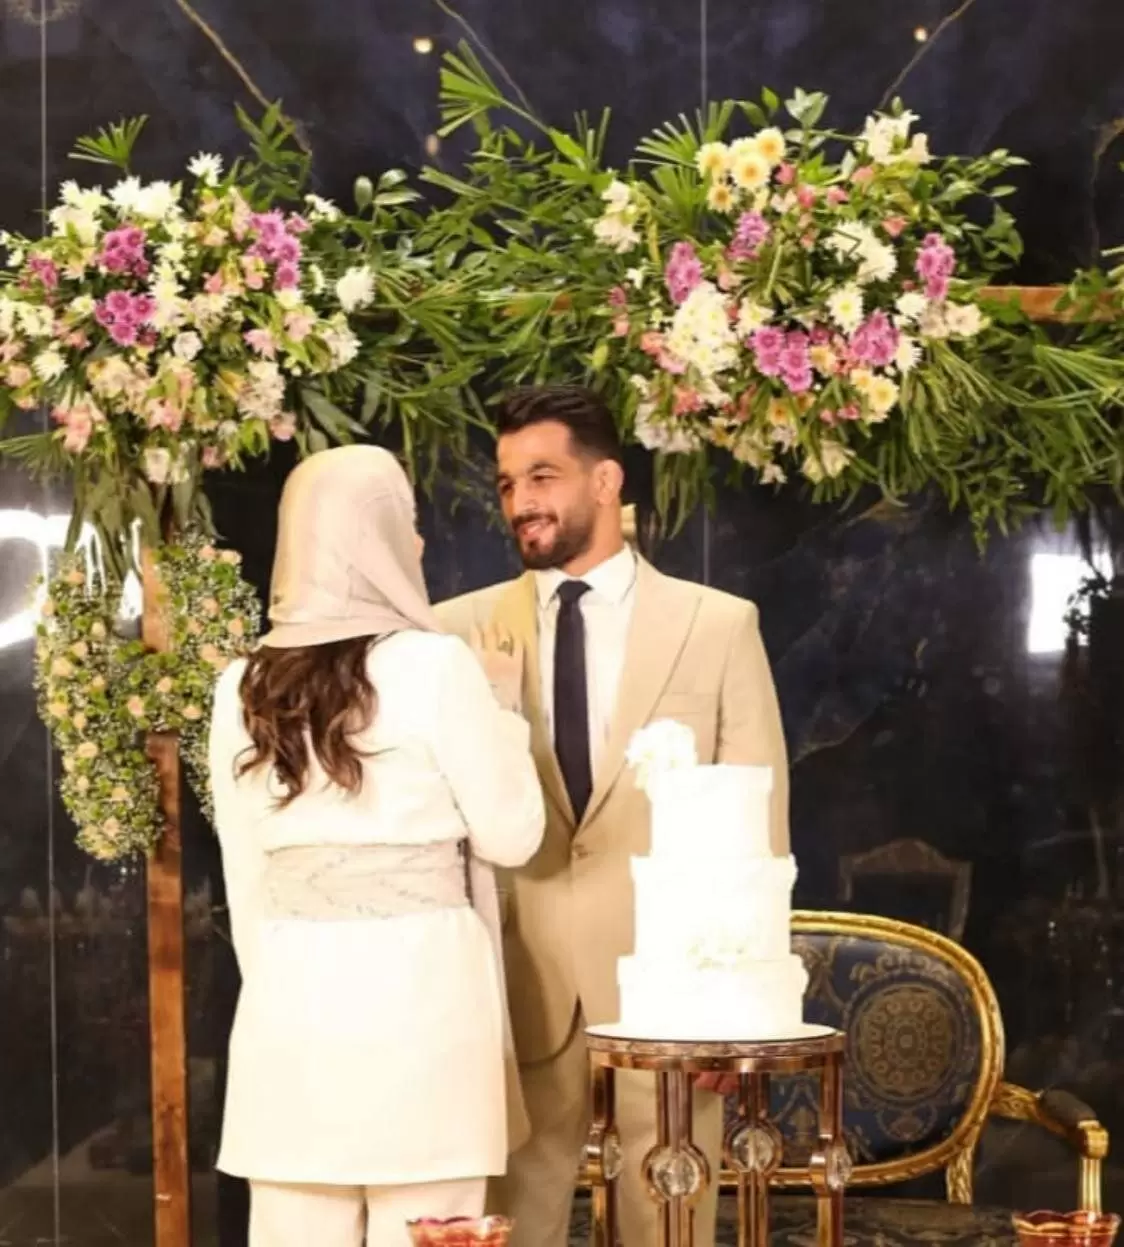 حسن یزدانی رسما ازدواج کرد و داماد شد  | تصاویر دامادی حسن یزدانی در کنار عروسش 